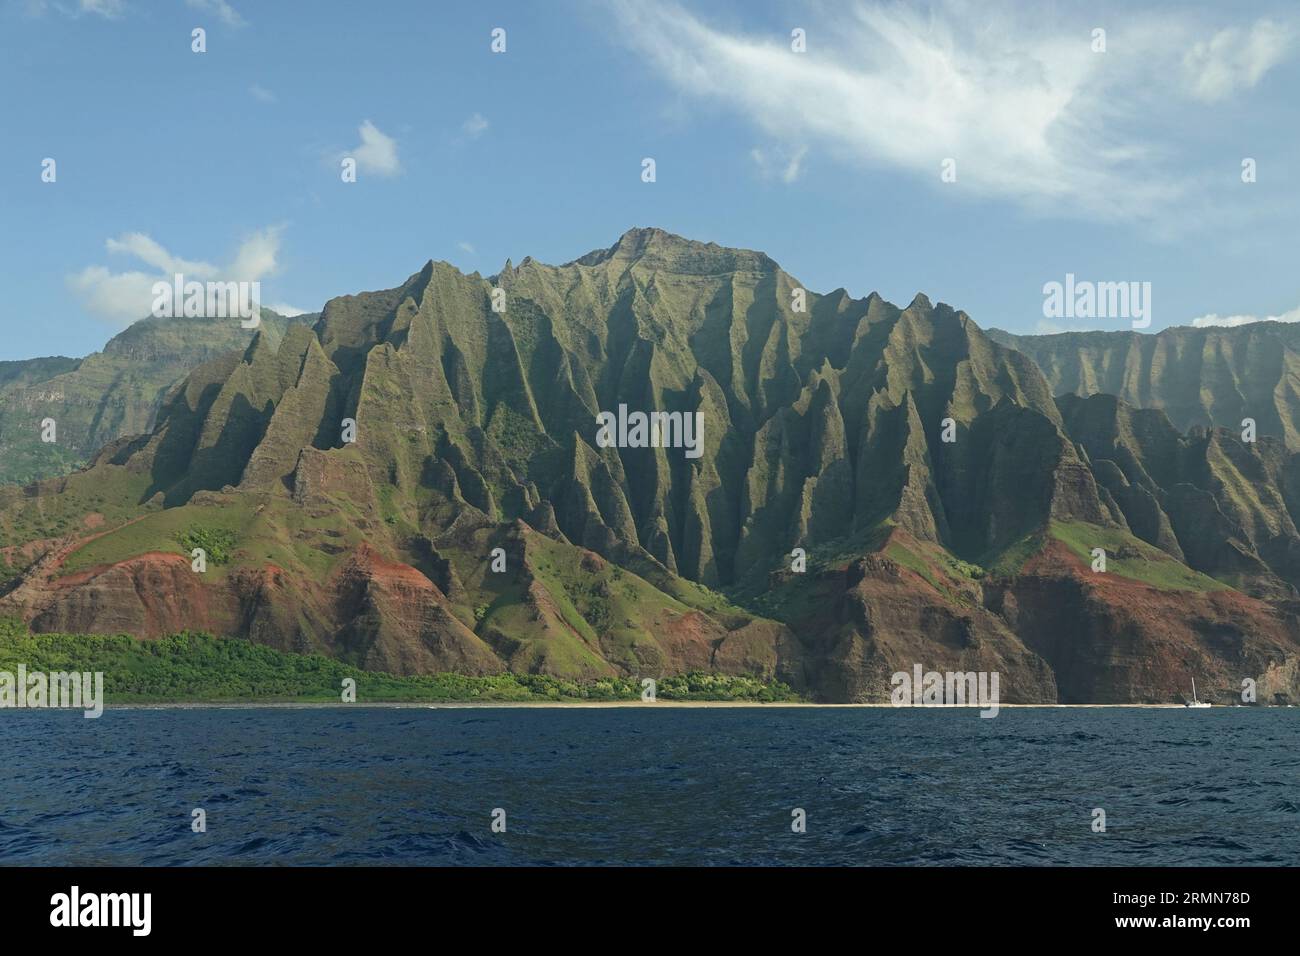 Les montagnes escarpées de la côte de Napali, situées sur l'île de Kauai, Hawaï, sont montrées depuis une vue sur l'océan Pacifique pendant la journée. Banque D'Images